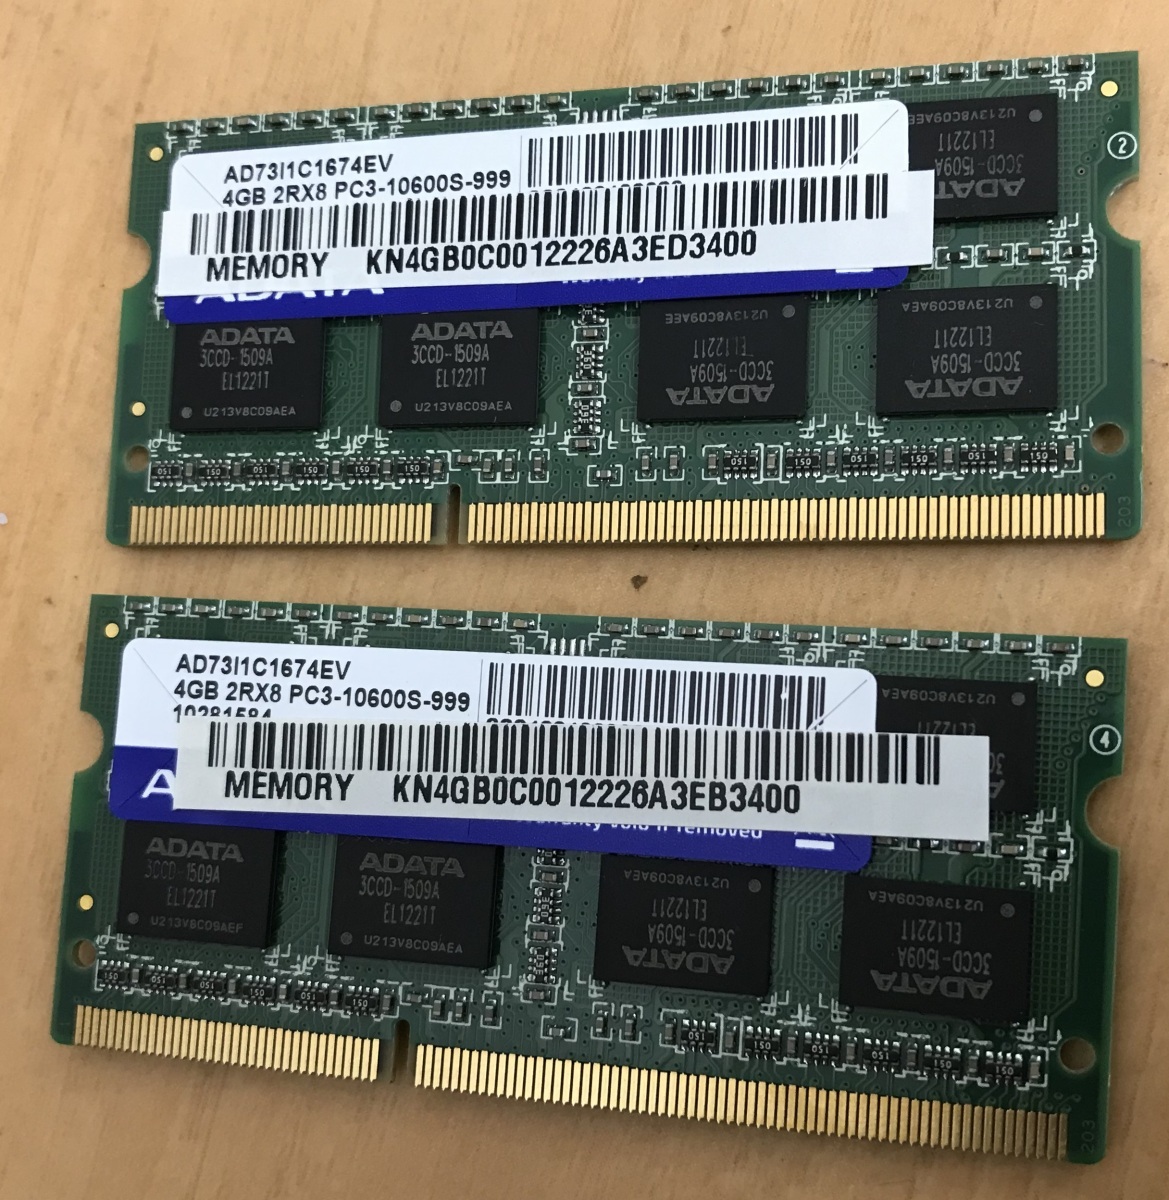 ADATA 2RX8 PC3-10600S 2枚組 1セット 8GB DDR3ノート用 メモリ 204ピン DDR3-1333 4GB 2枚 8GB DDR3 LAPTOP RAM JChere雅虎拍卖代购